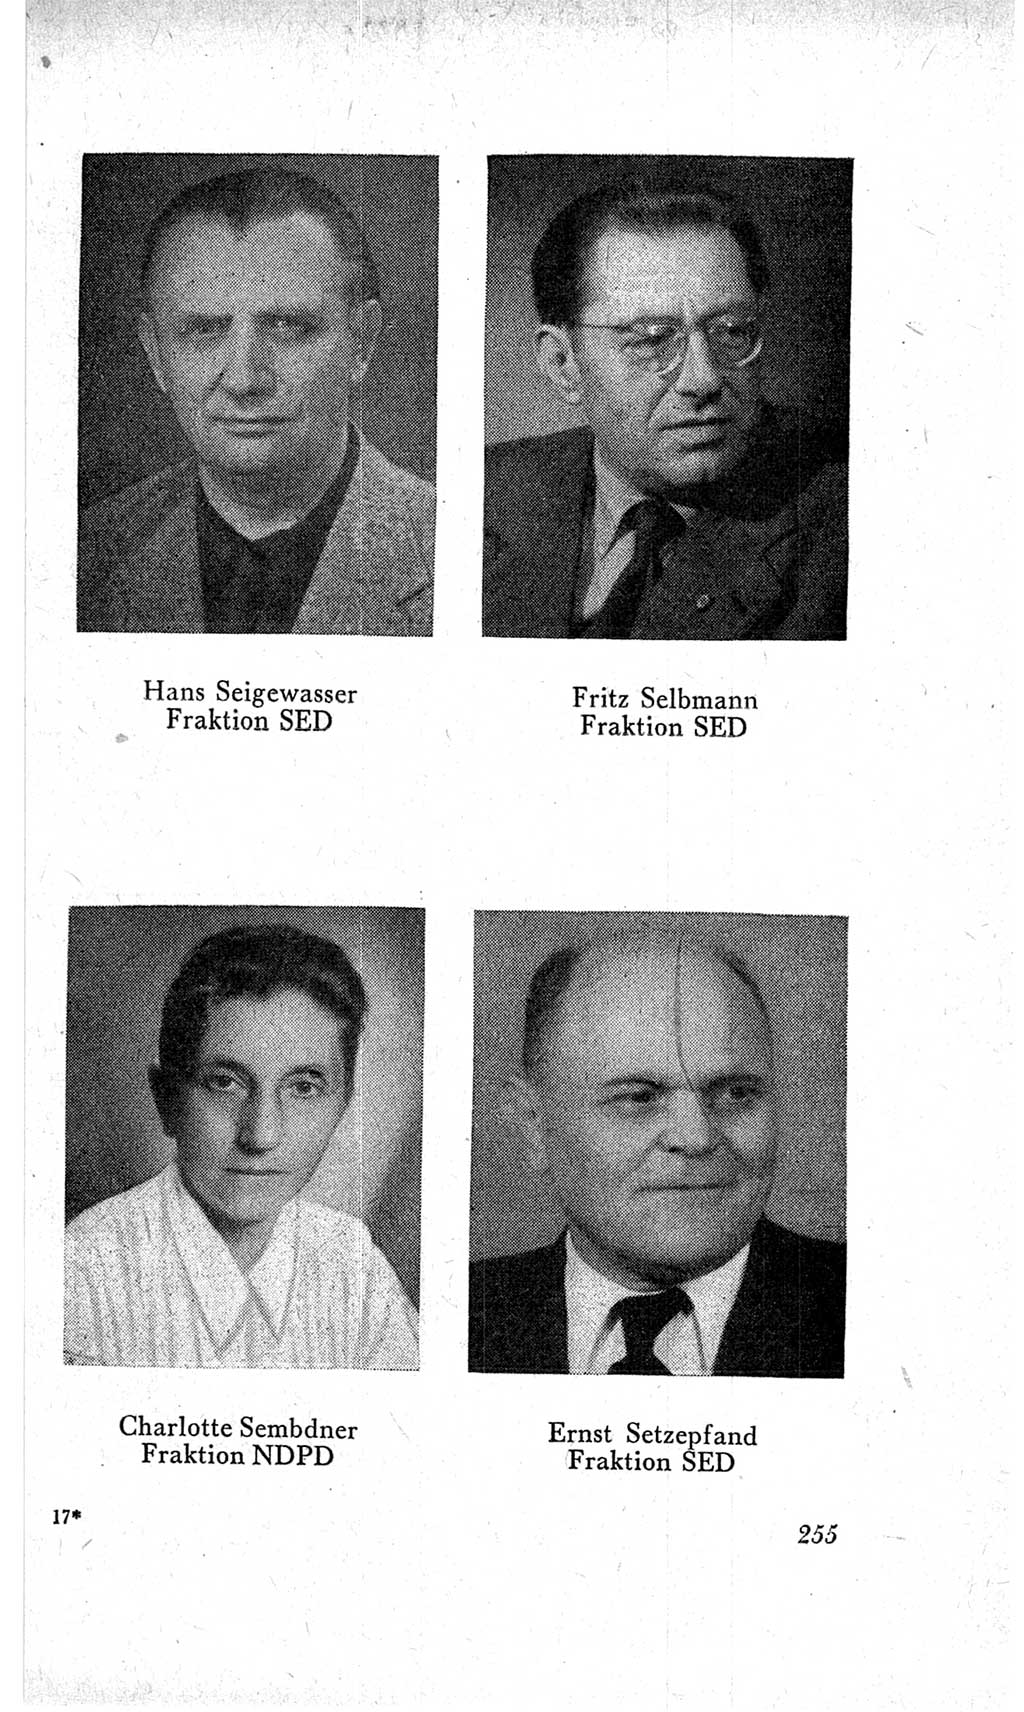 Handbuch der Volkskammer (VK) der Deutschen Demokratischen Republik (DDR), 2. Wahlperiode 1954-1958, Seite 255 (Hdb. VK. DDR, 2. WP. 1954-1958, S. 255)